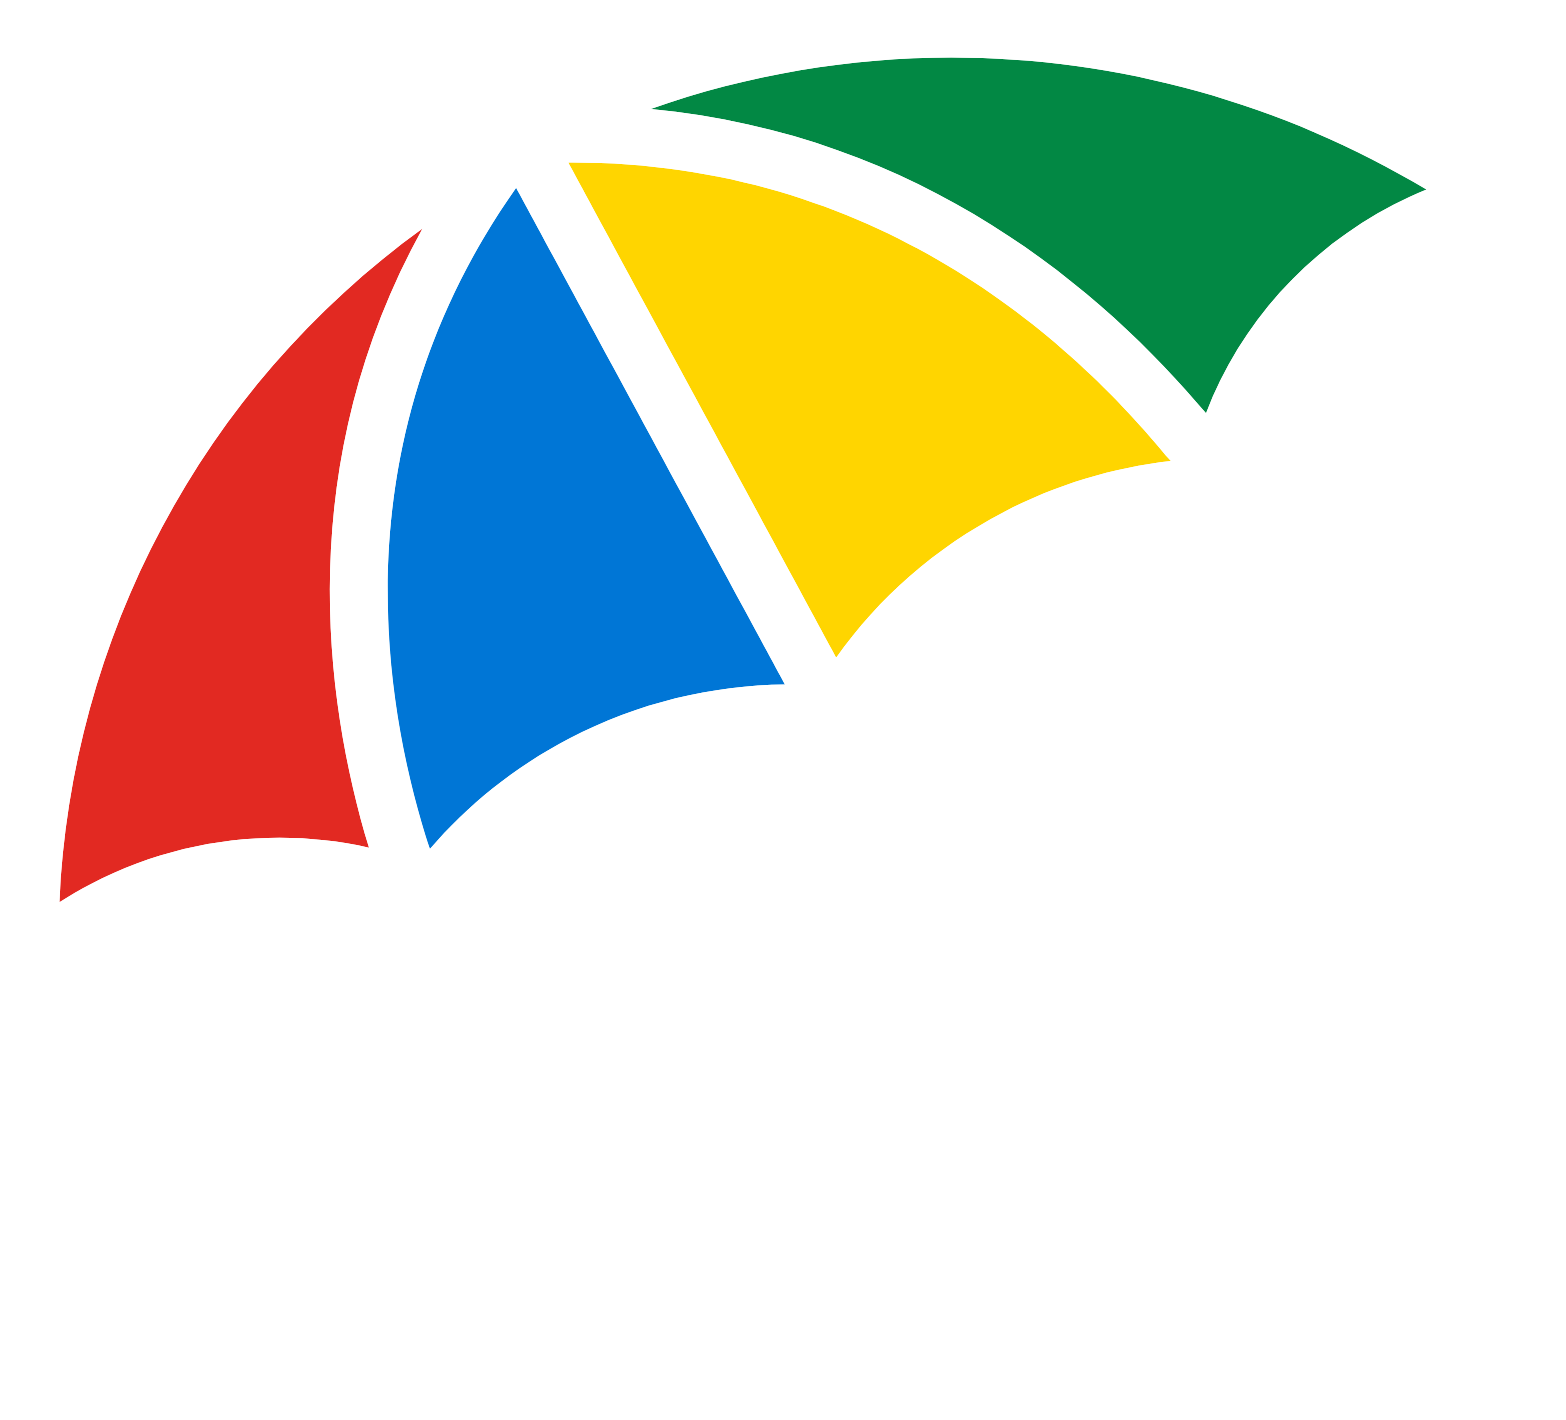 Legal & General logo pour fonds sombres (PNG transparent)